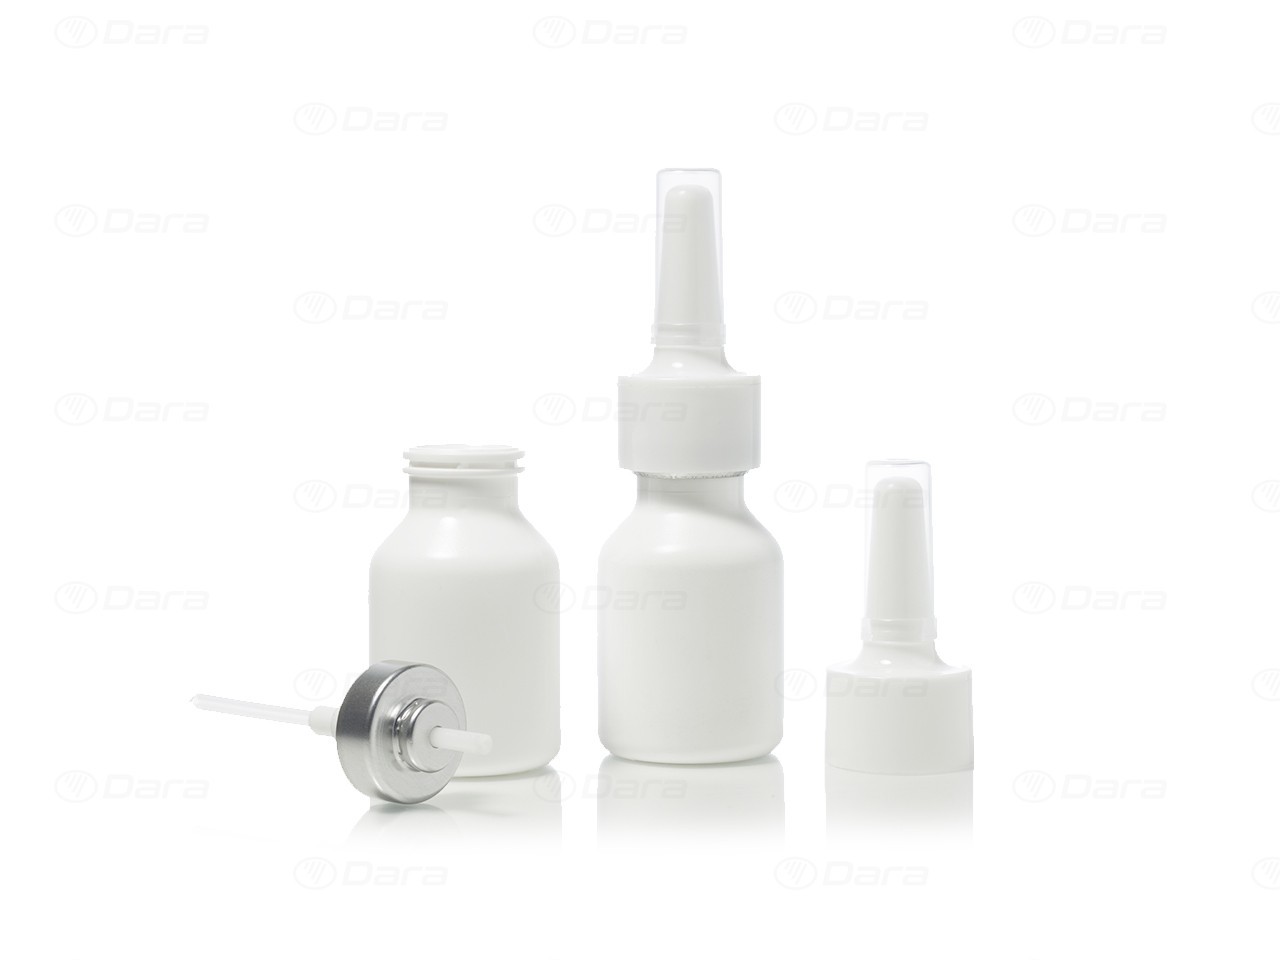 Rotationsfüller und Verschließer für Injektionsfläschchen